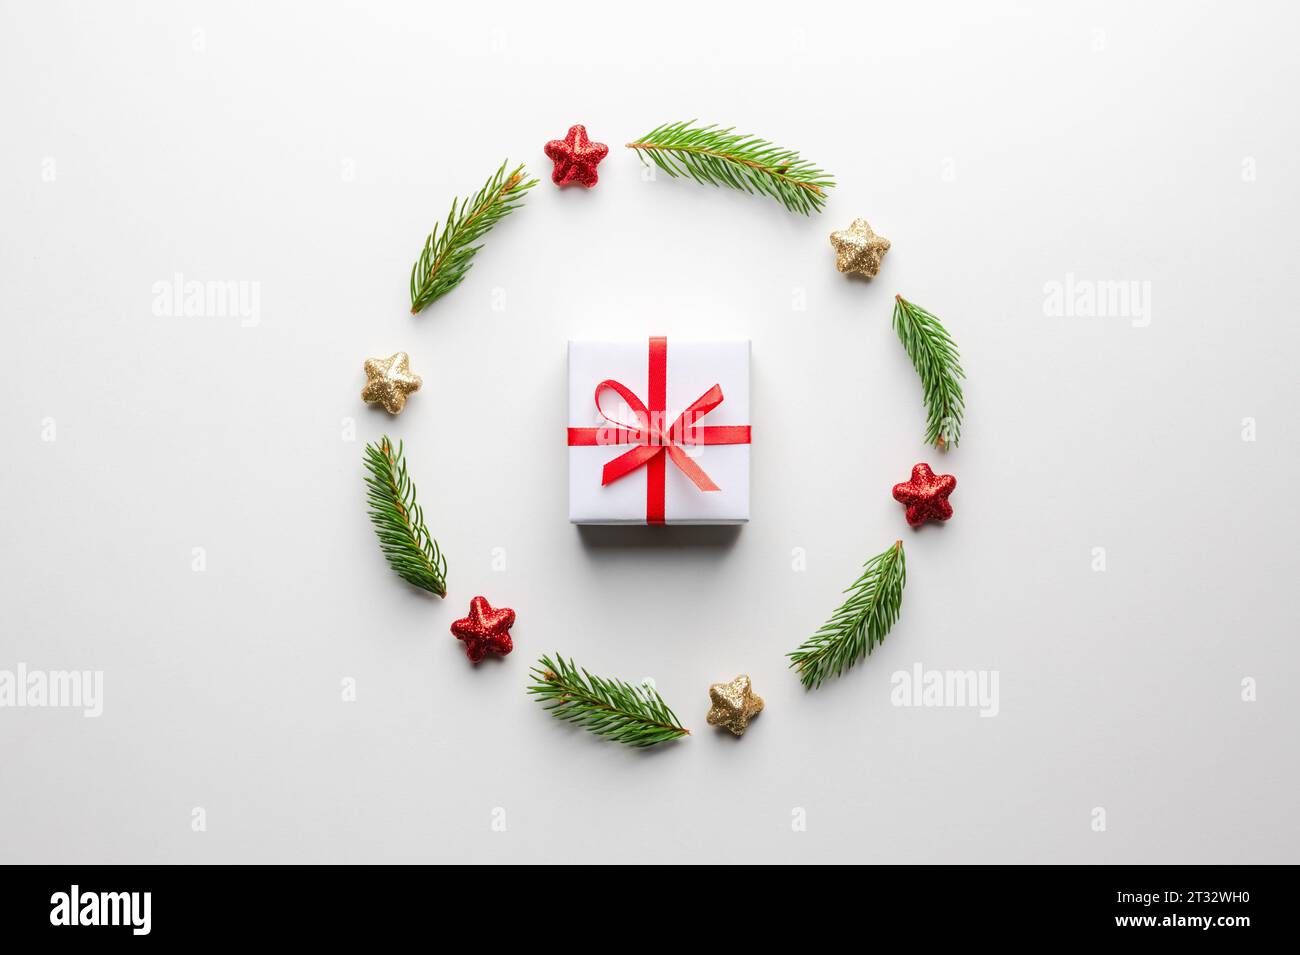 Kreativer Weihnachtshintergrund mit Weihnachtsgeschenkkasten mit rotem Band, Kugeln, Tannenzweigen und goldenen Sternen auf weißem Hintergrund. Flach, Draufsicht, Kopierraum Stockfoto